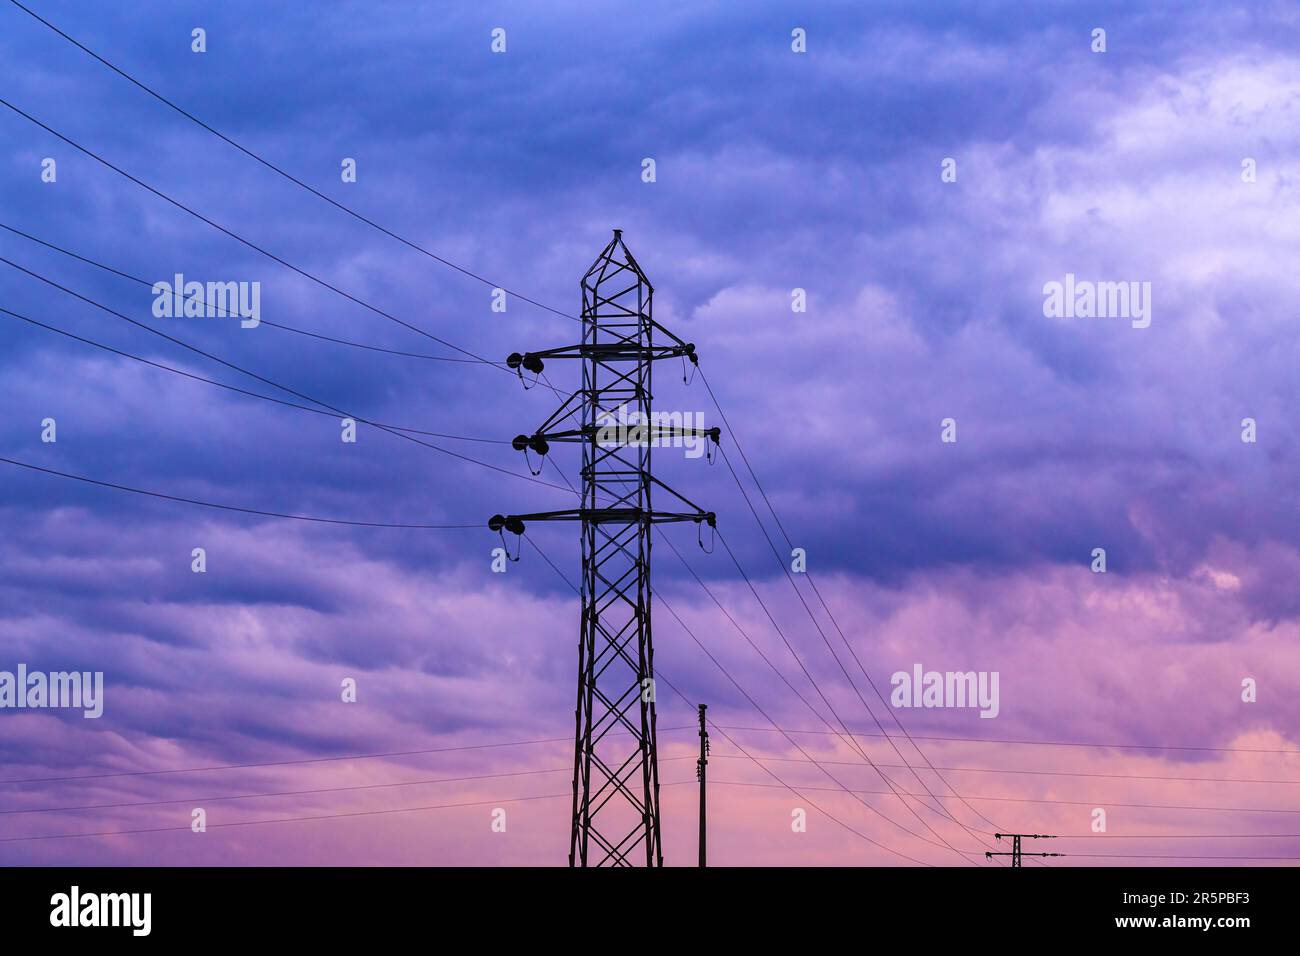 Energiegeladene Krisensituation konzeptionelles Bild, Silhouette von Strommasten und Stromkabeln vor dem dramatischen violetten Sonnenuntergang Himmel, selektiver Fokus Stockfoto